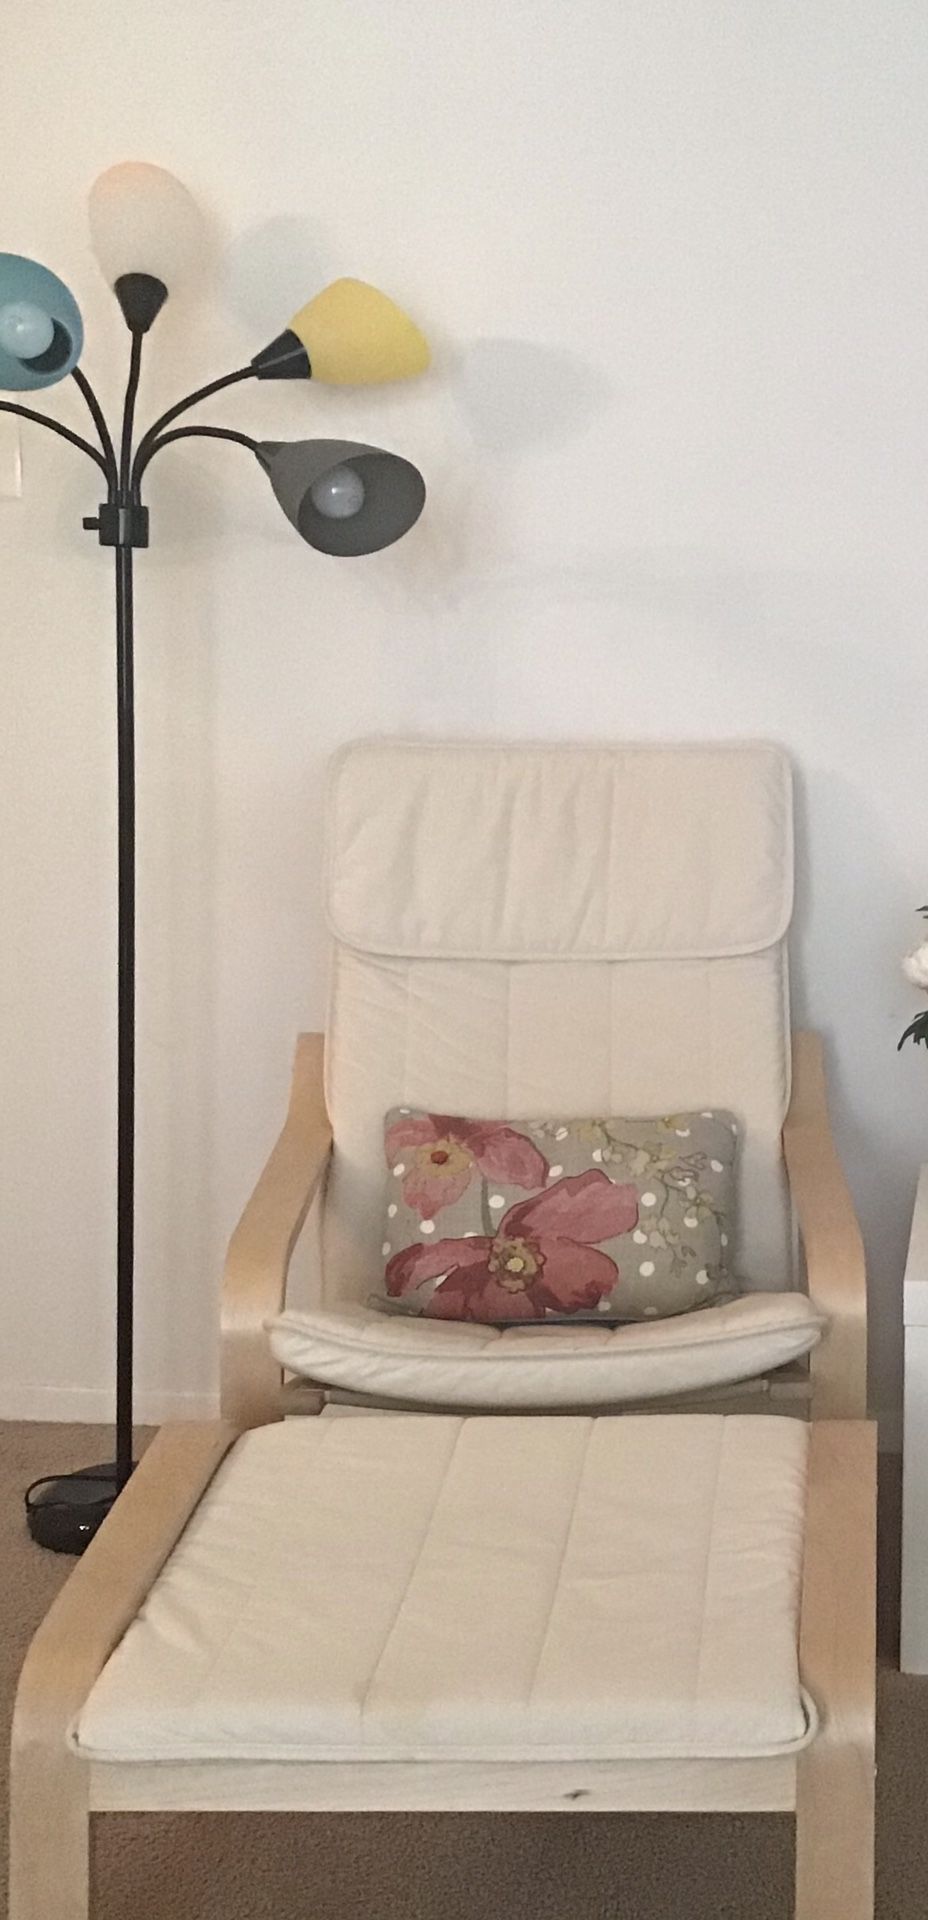 IKEA armchair with ottoman